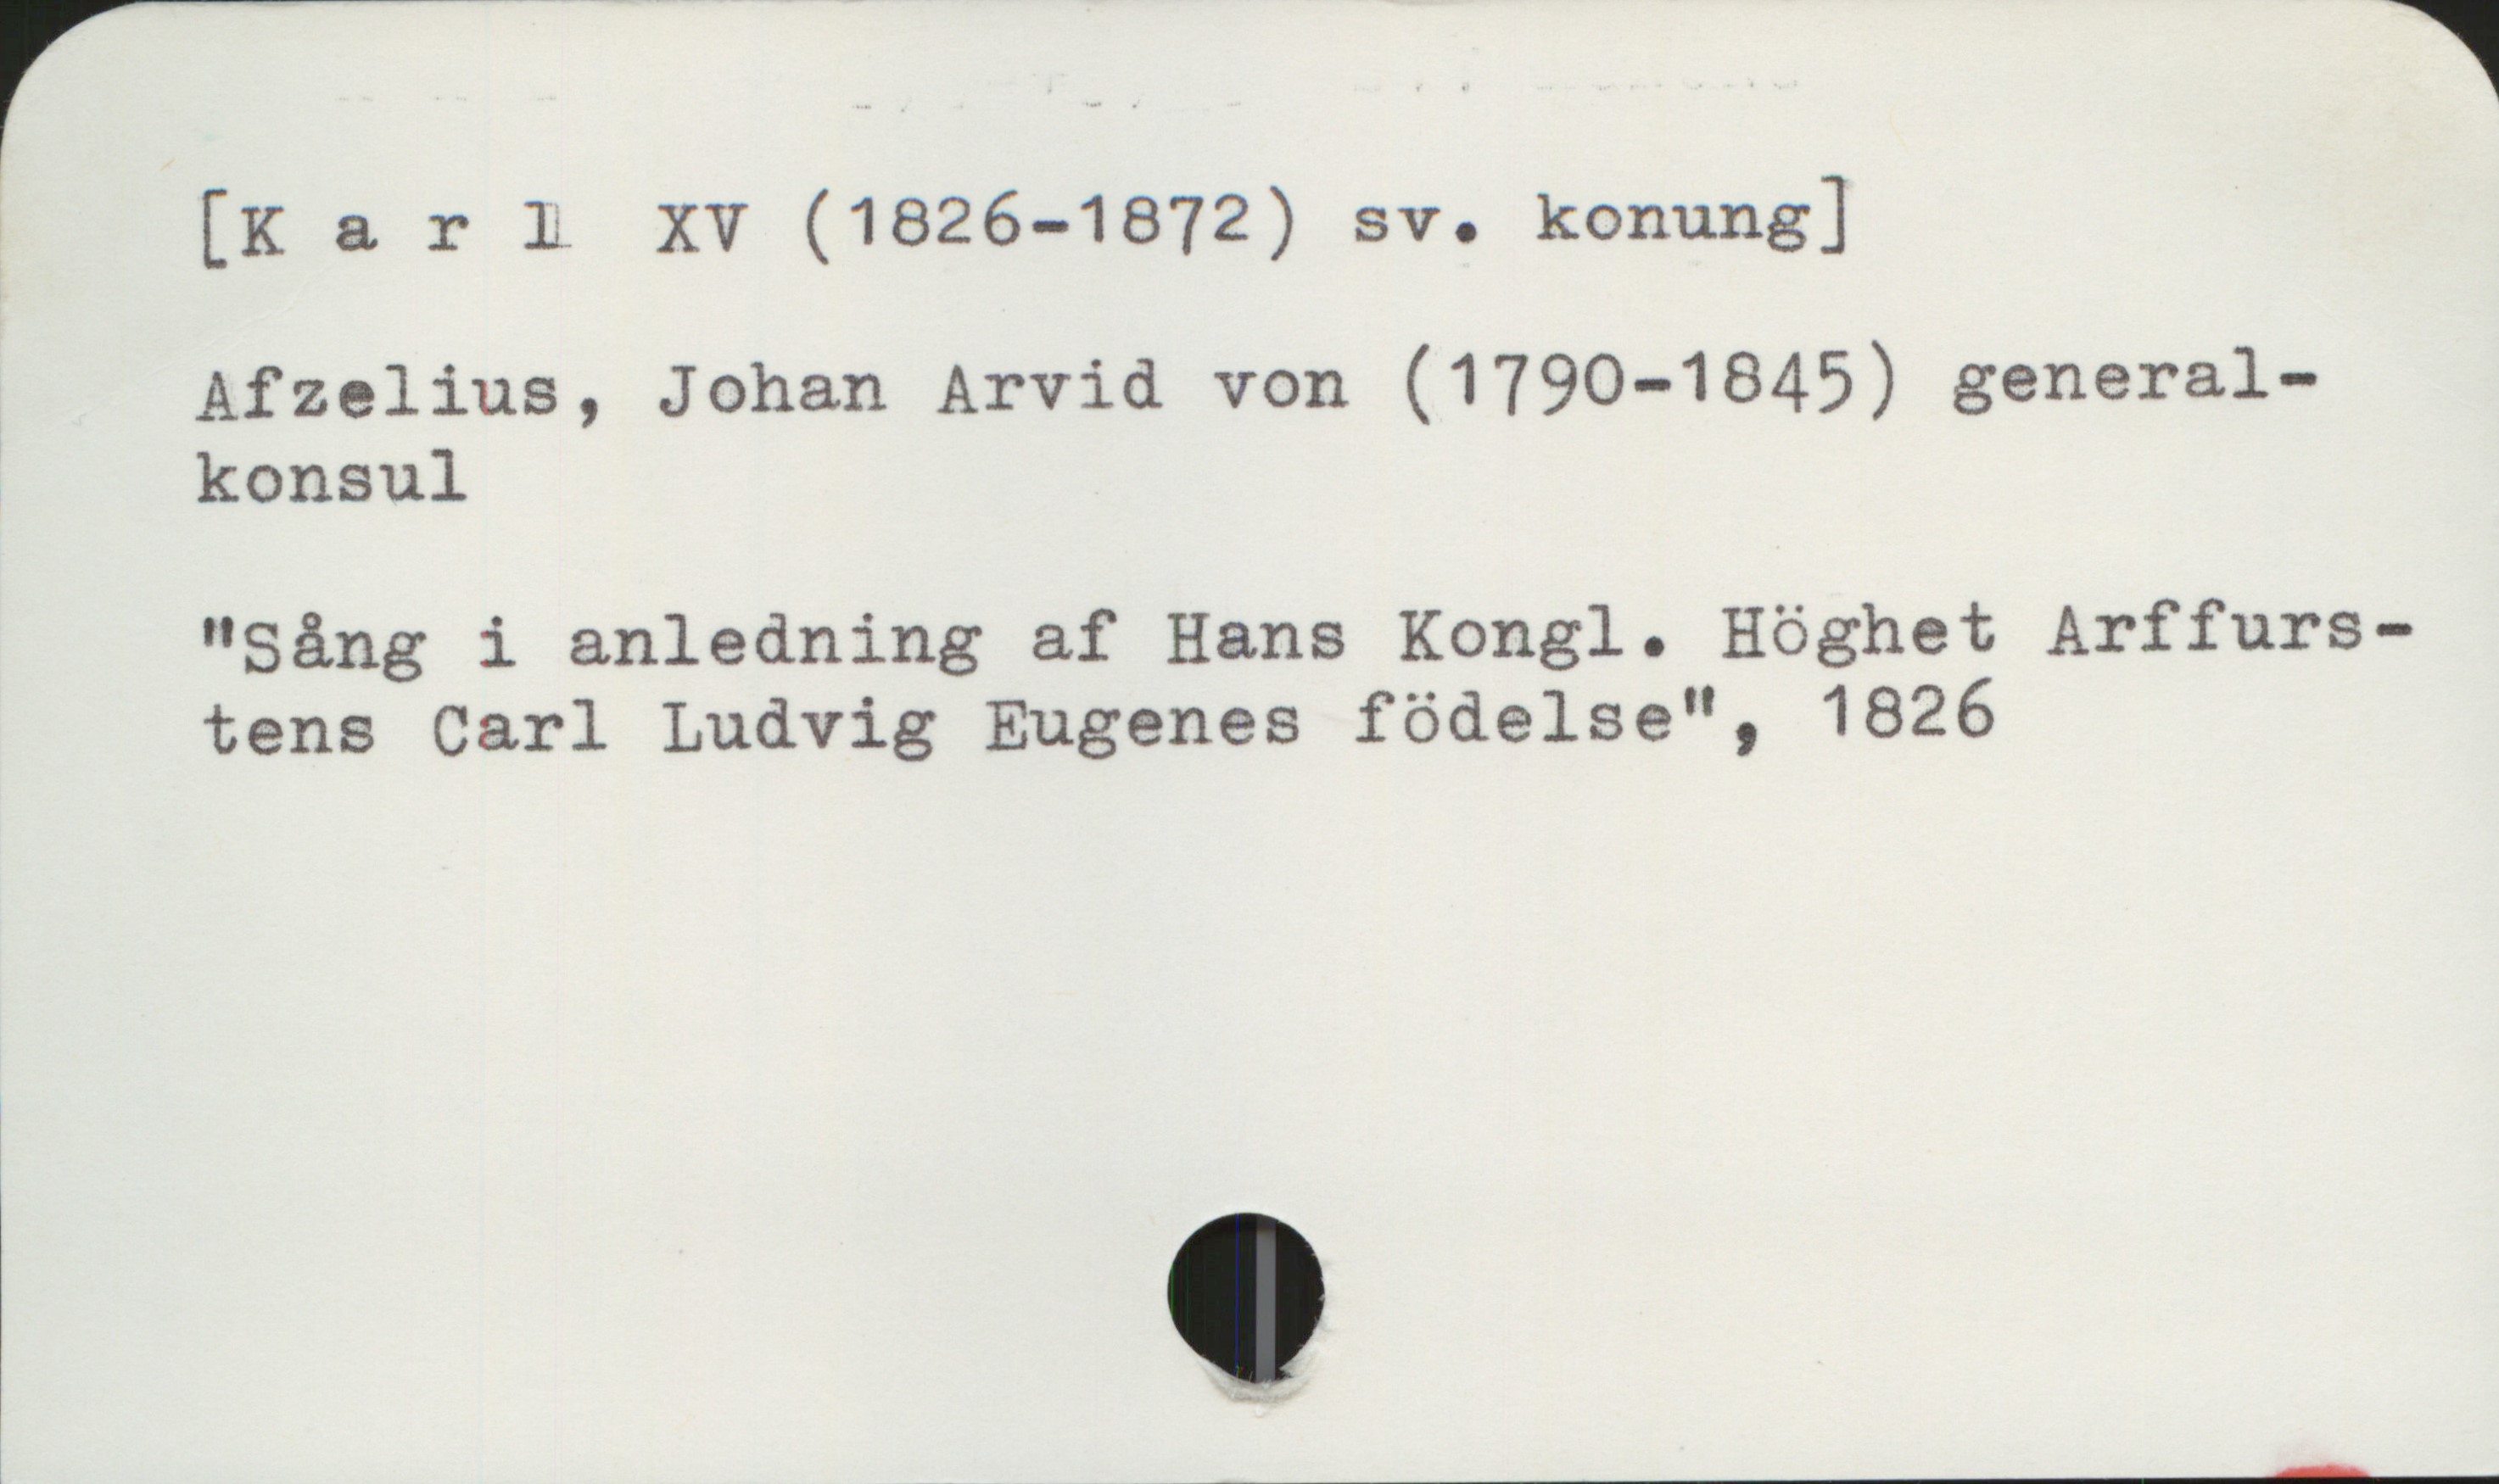  [K a r L XV (1826-1872) sv. konung]

Afzelius, Johan Arvid von (1790-1845) general-
konsul

"Sång i anledning af Hans Kongl. Höghet Arffurs-
tens Carl Ludvig Eugenes födelse", 1826

